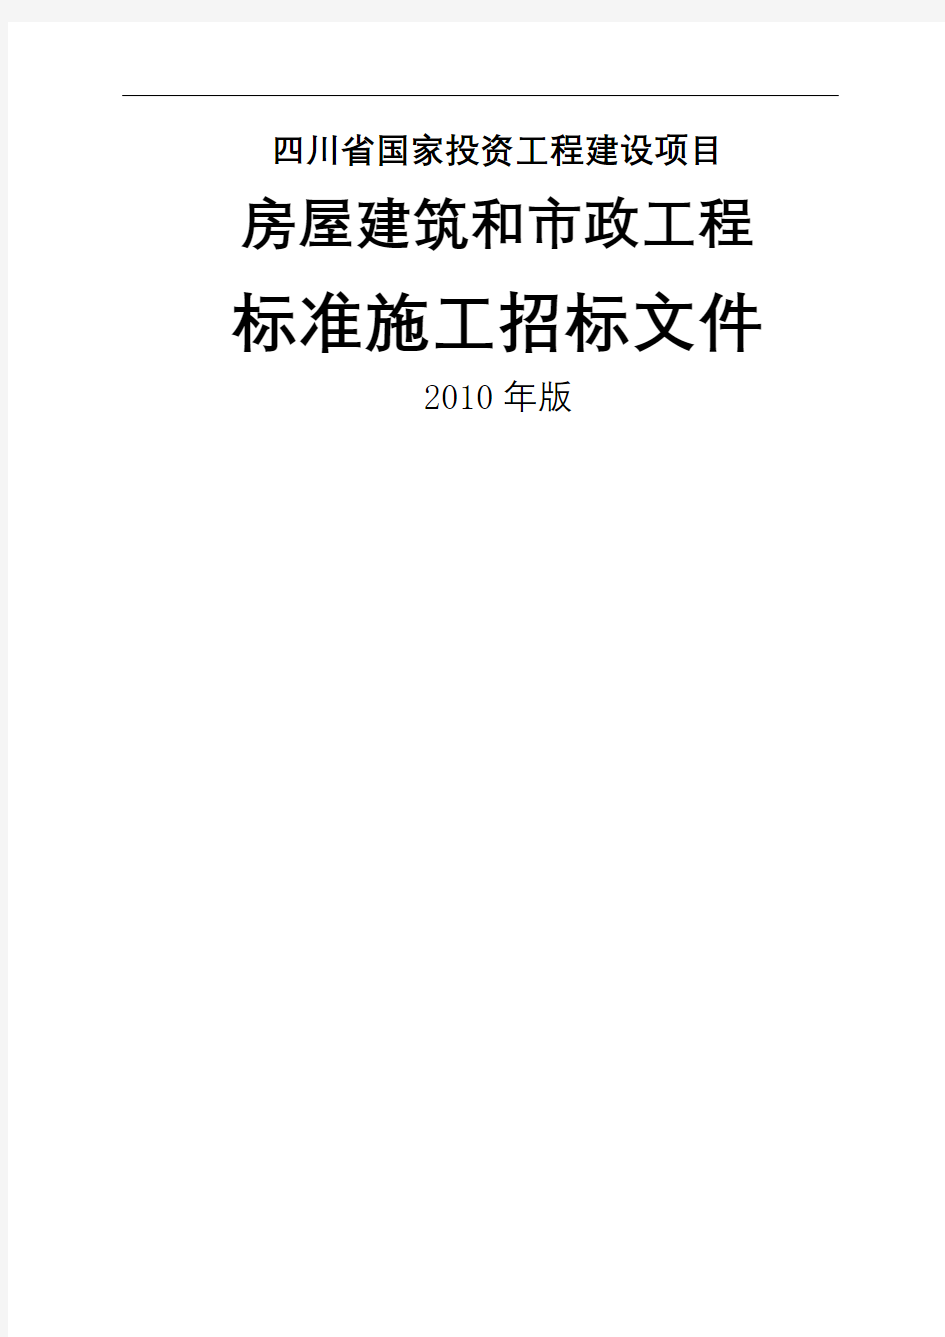 四川省房屋建筑和市政工程标准施工招标文件年版